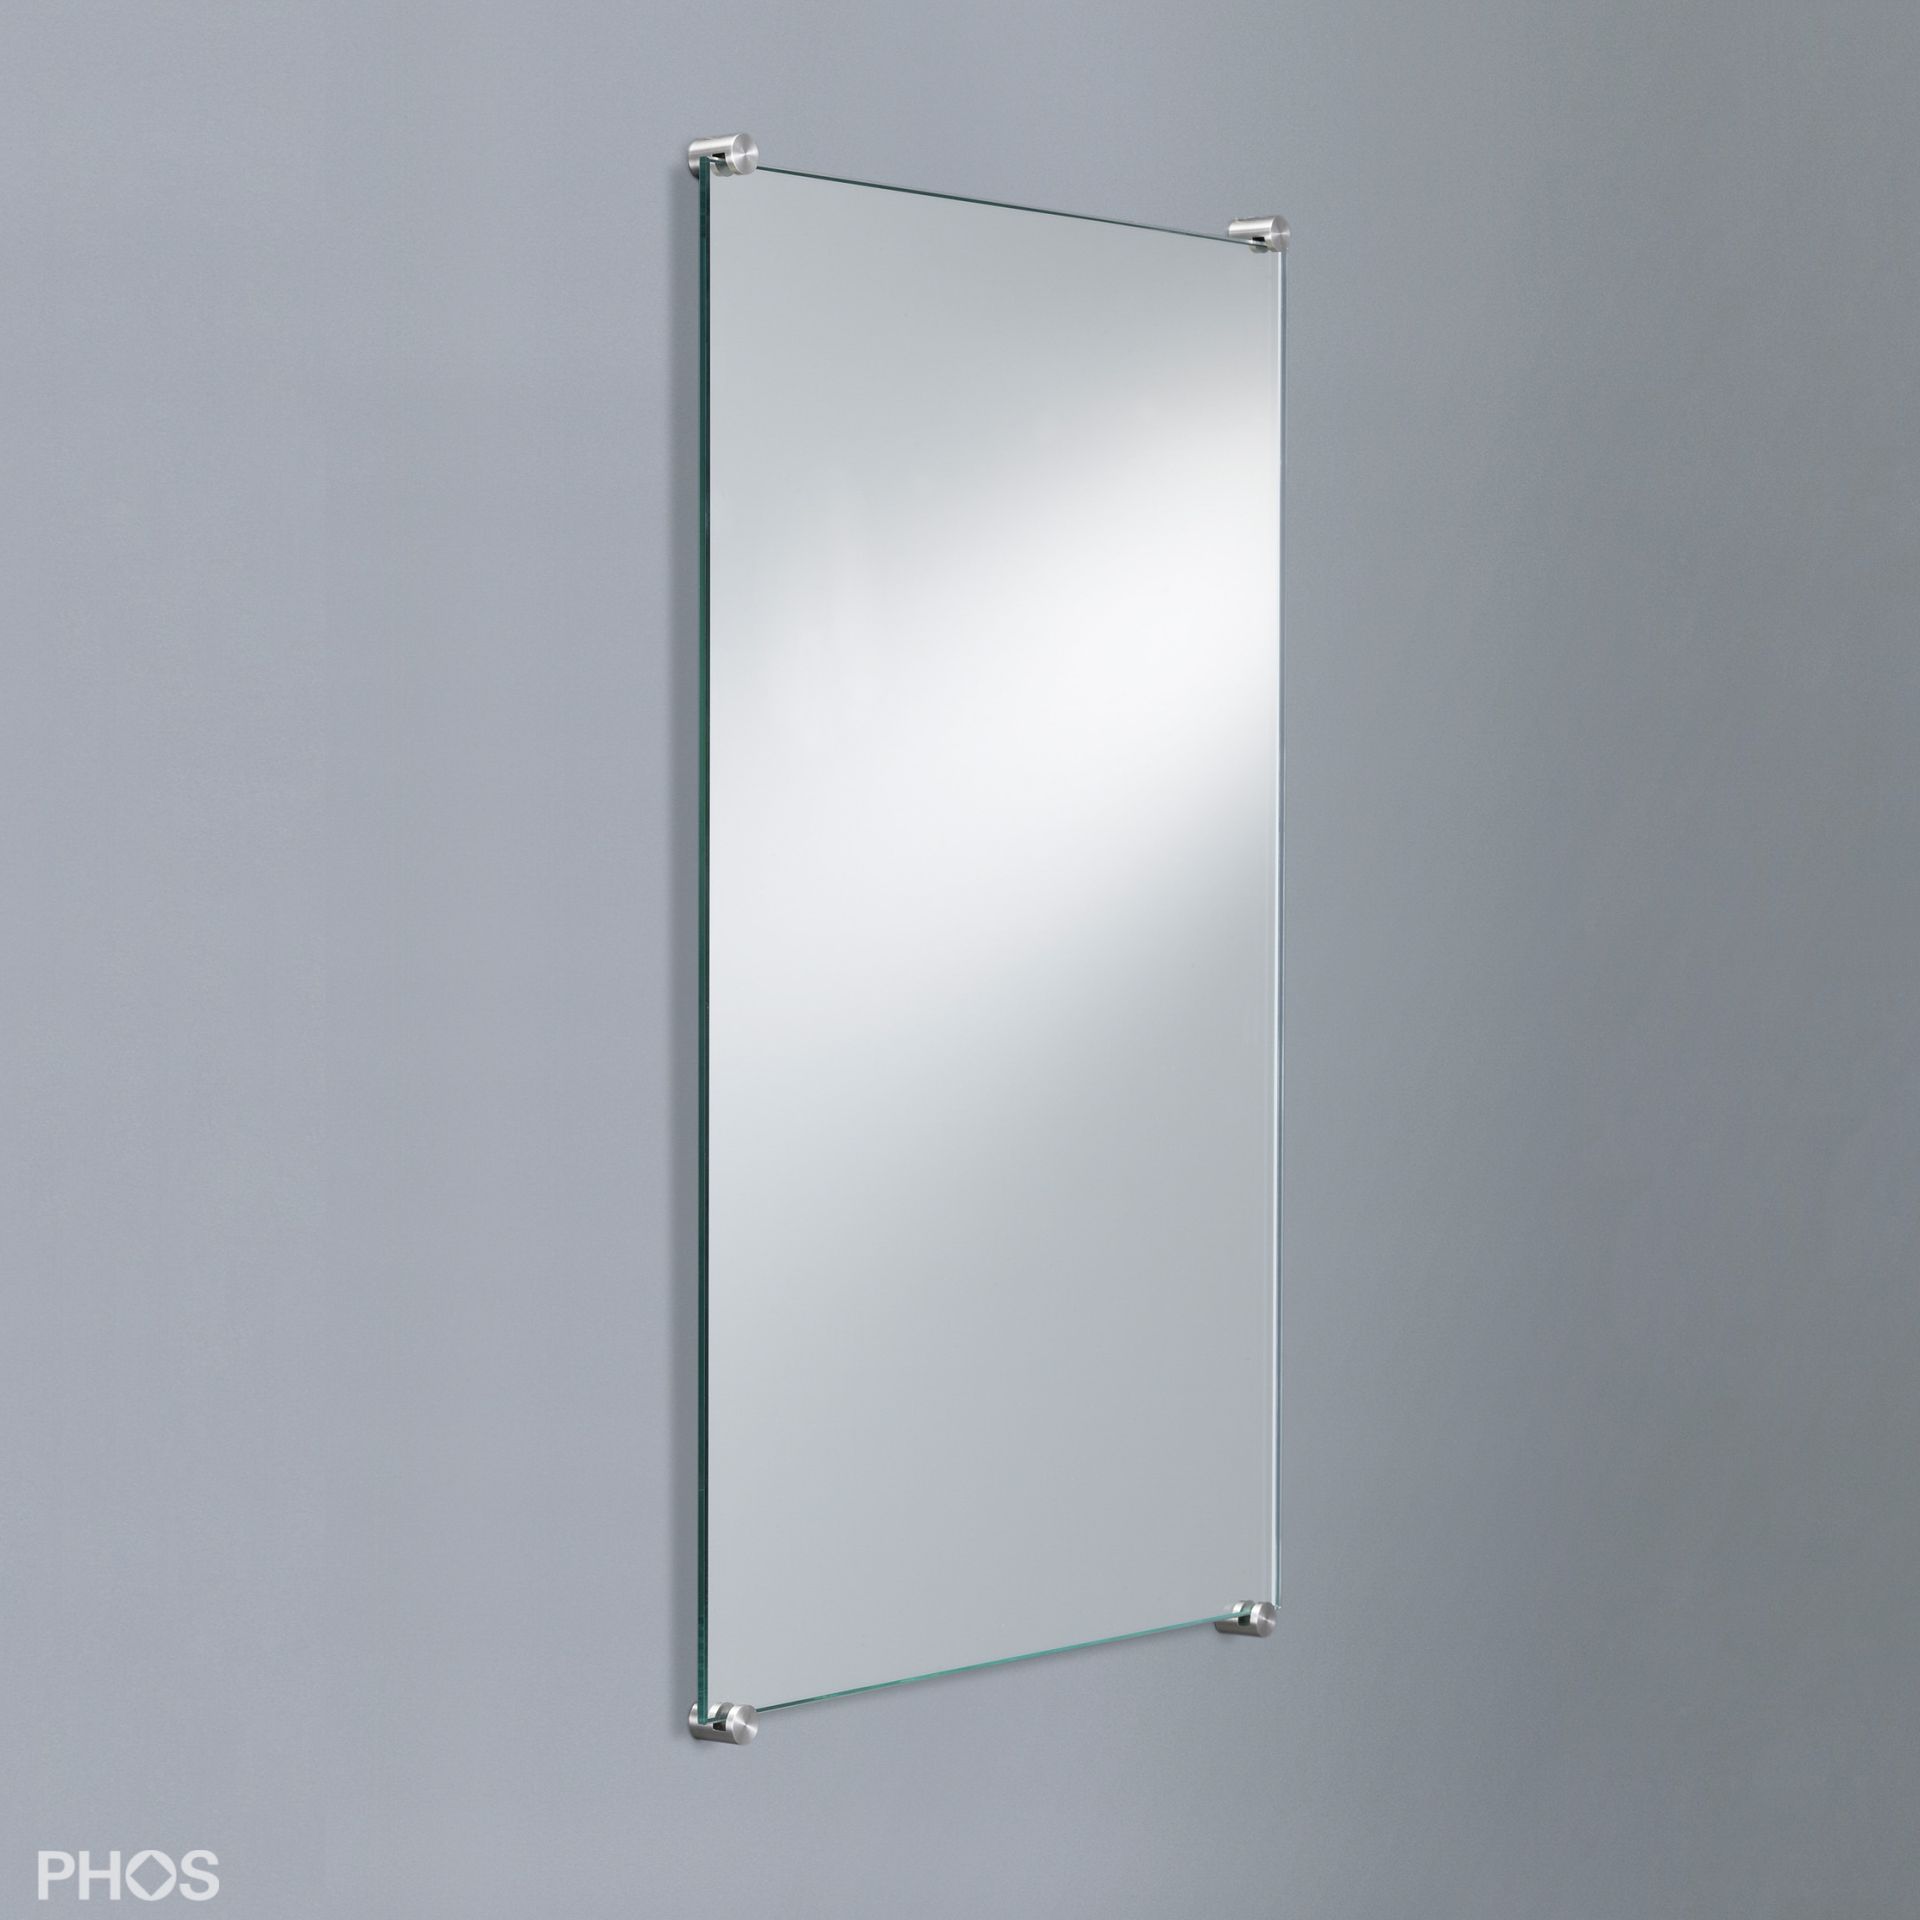 Edelstahl-Spiegelhalter Set für 6 mm Spiegel mit verdeckter Befestigung